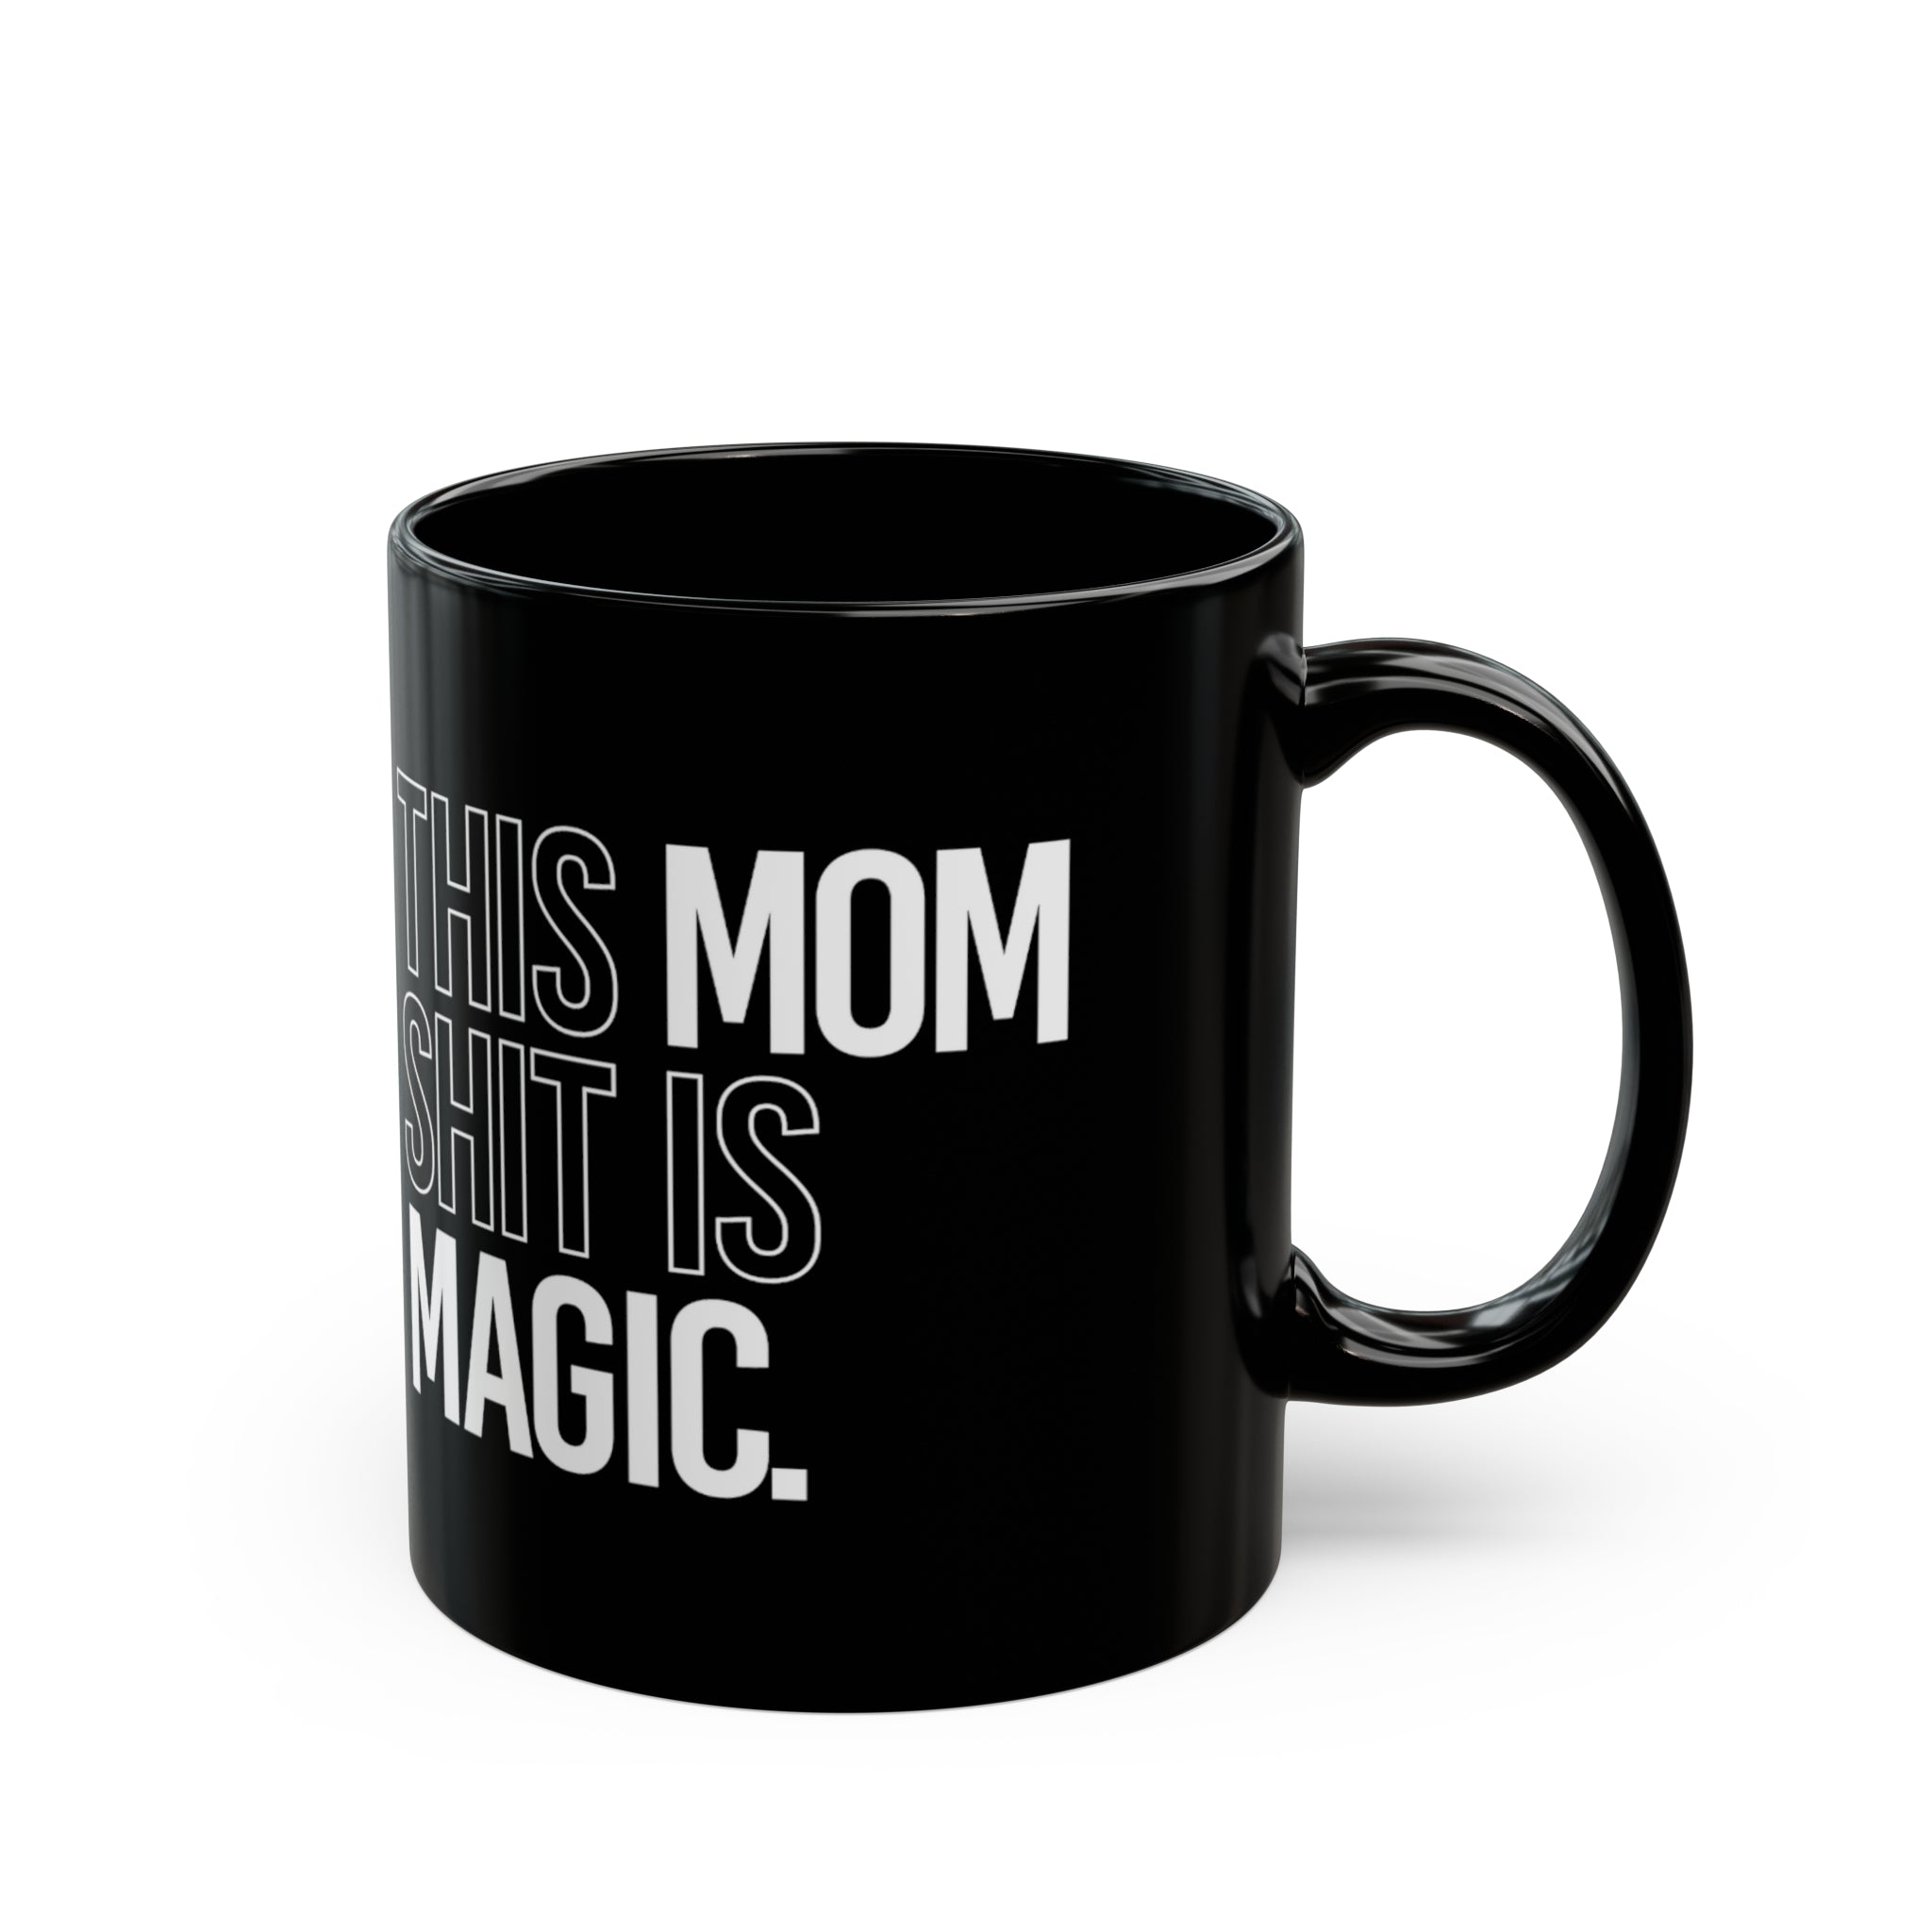 This Mom Shit Is Magic Mug 11oz